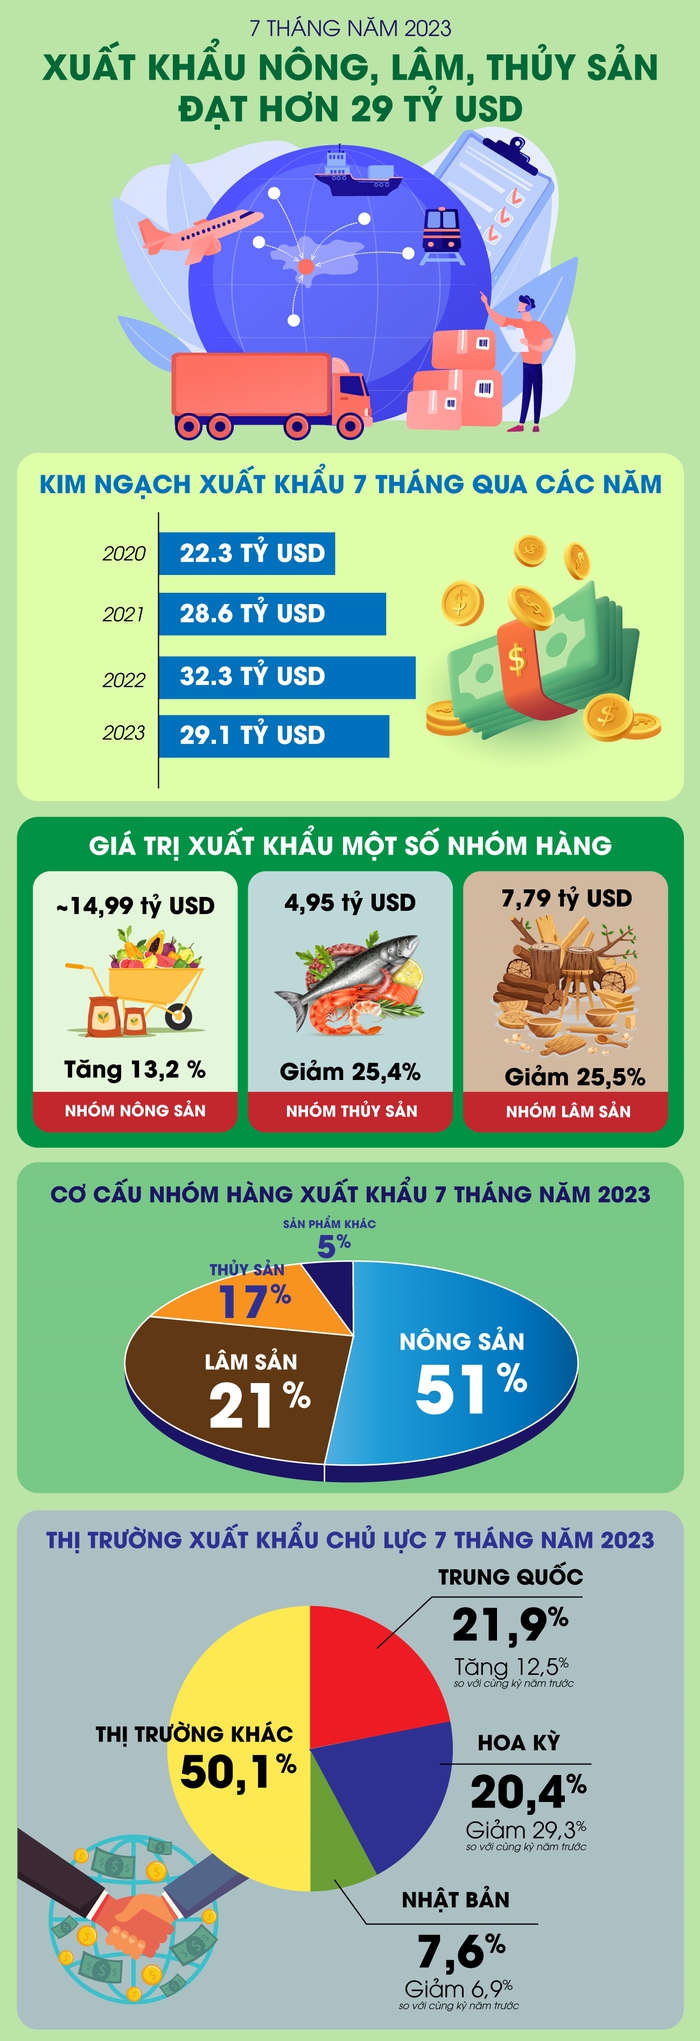 7 tháng năm 2023: Việt Nam xuất khẩu nông, lâm, thủy sản đạt hơn 29 tỷ USD - Ảnh 1.